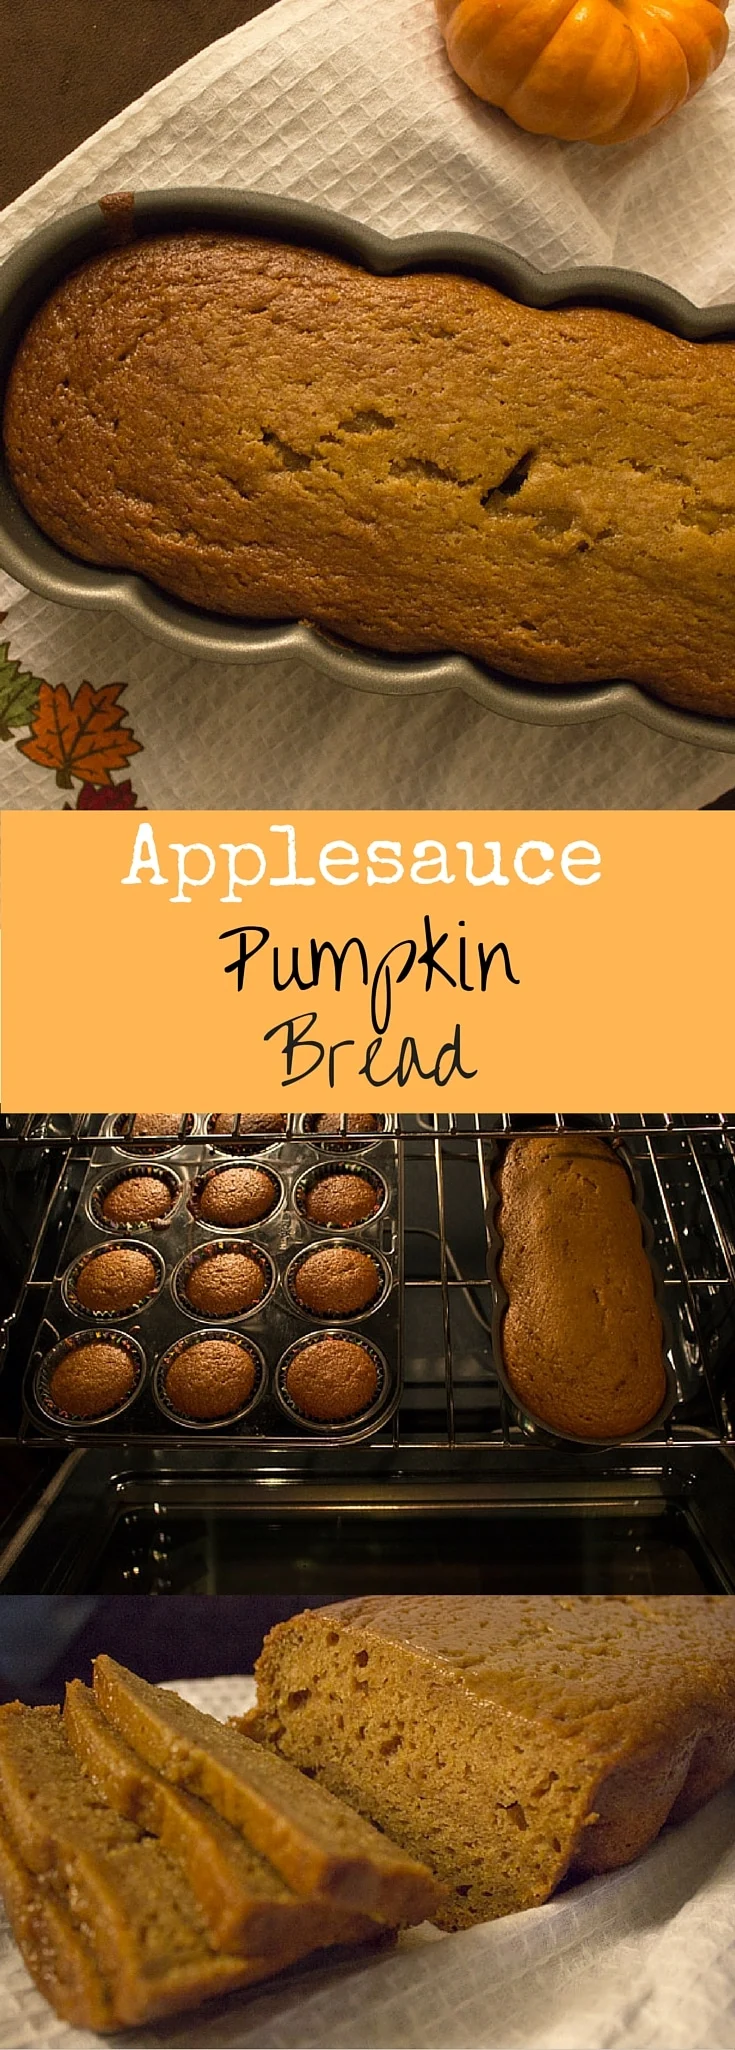 applesauce pumpkin bread pin